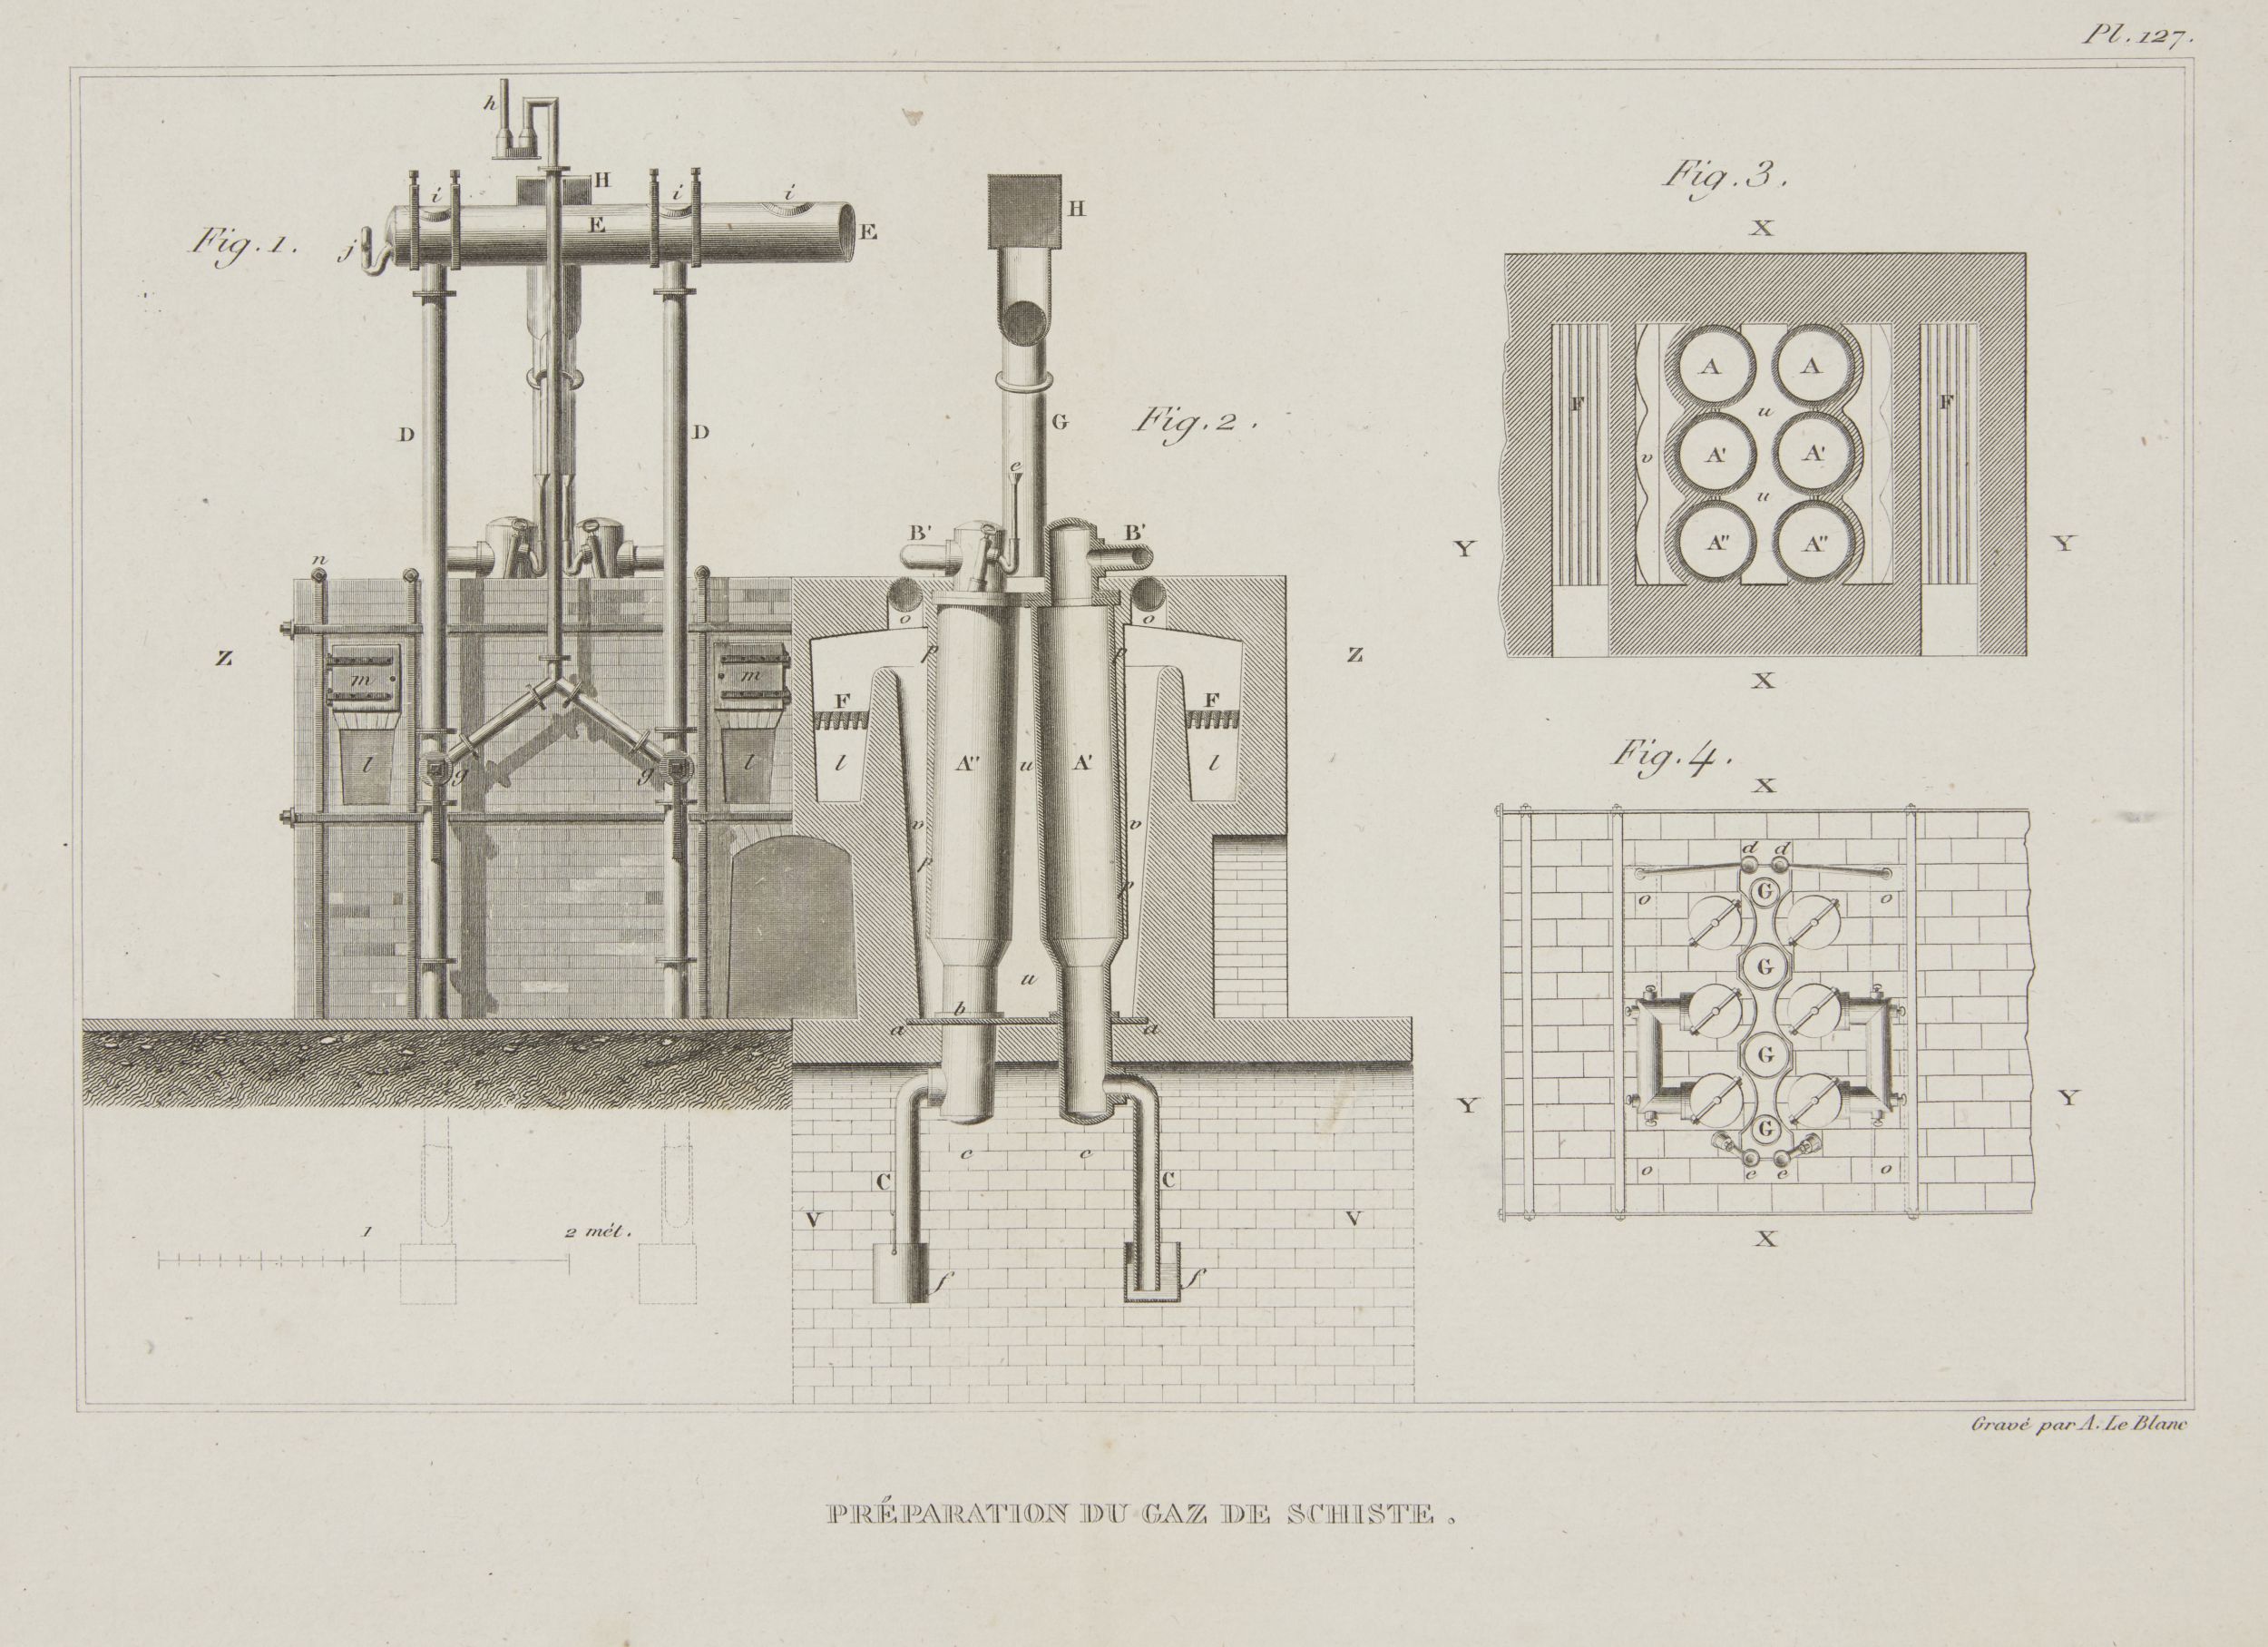 A le Blanc, French act.1819- Preparation du Gaz de Schiiste; copper engraving, 23.5x32cm: together